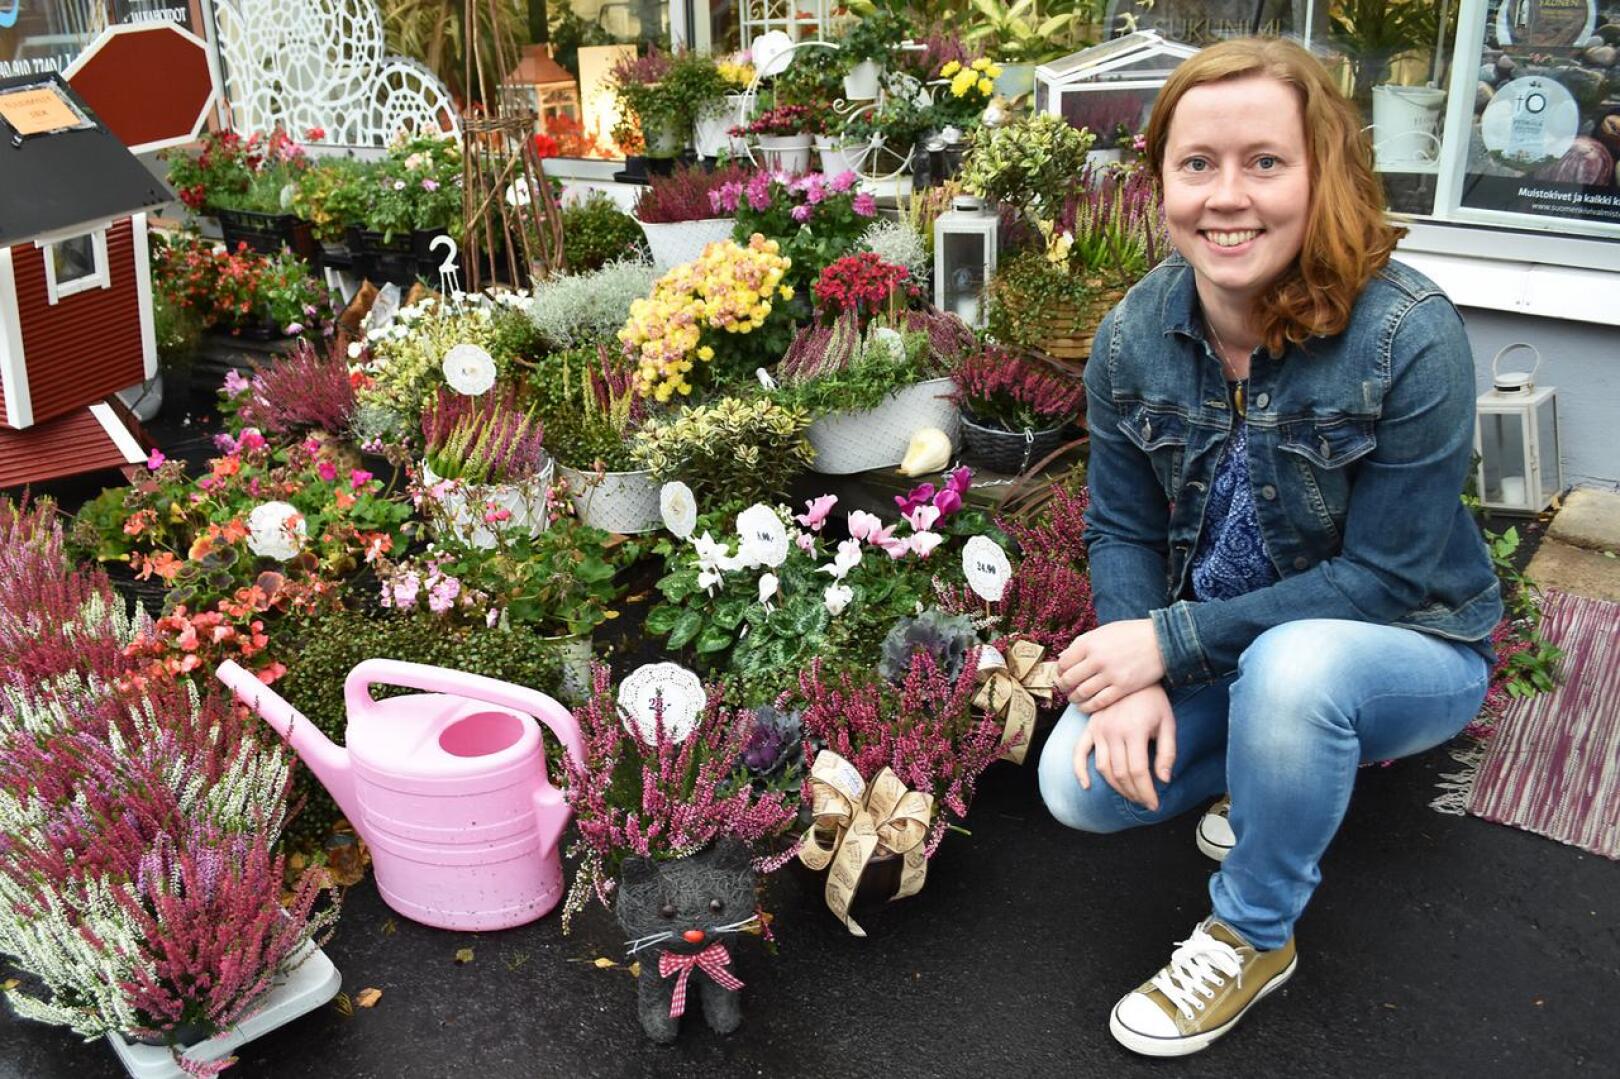 Marjo Laitalan päätyö on tällä hetkellä kukkakauppa Pitsilehdessä. Sen ohessa hän osallistuu maatilan hommiin ja tekee välillä sairaanhoitajan keikkoja kotihoidossa.